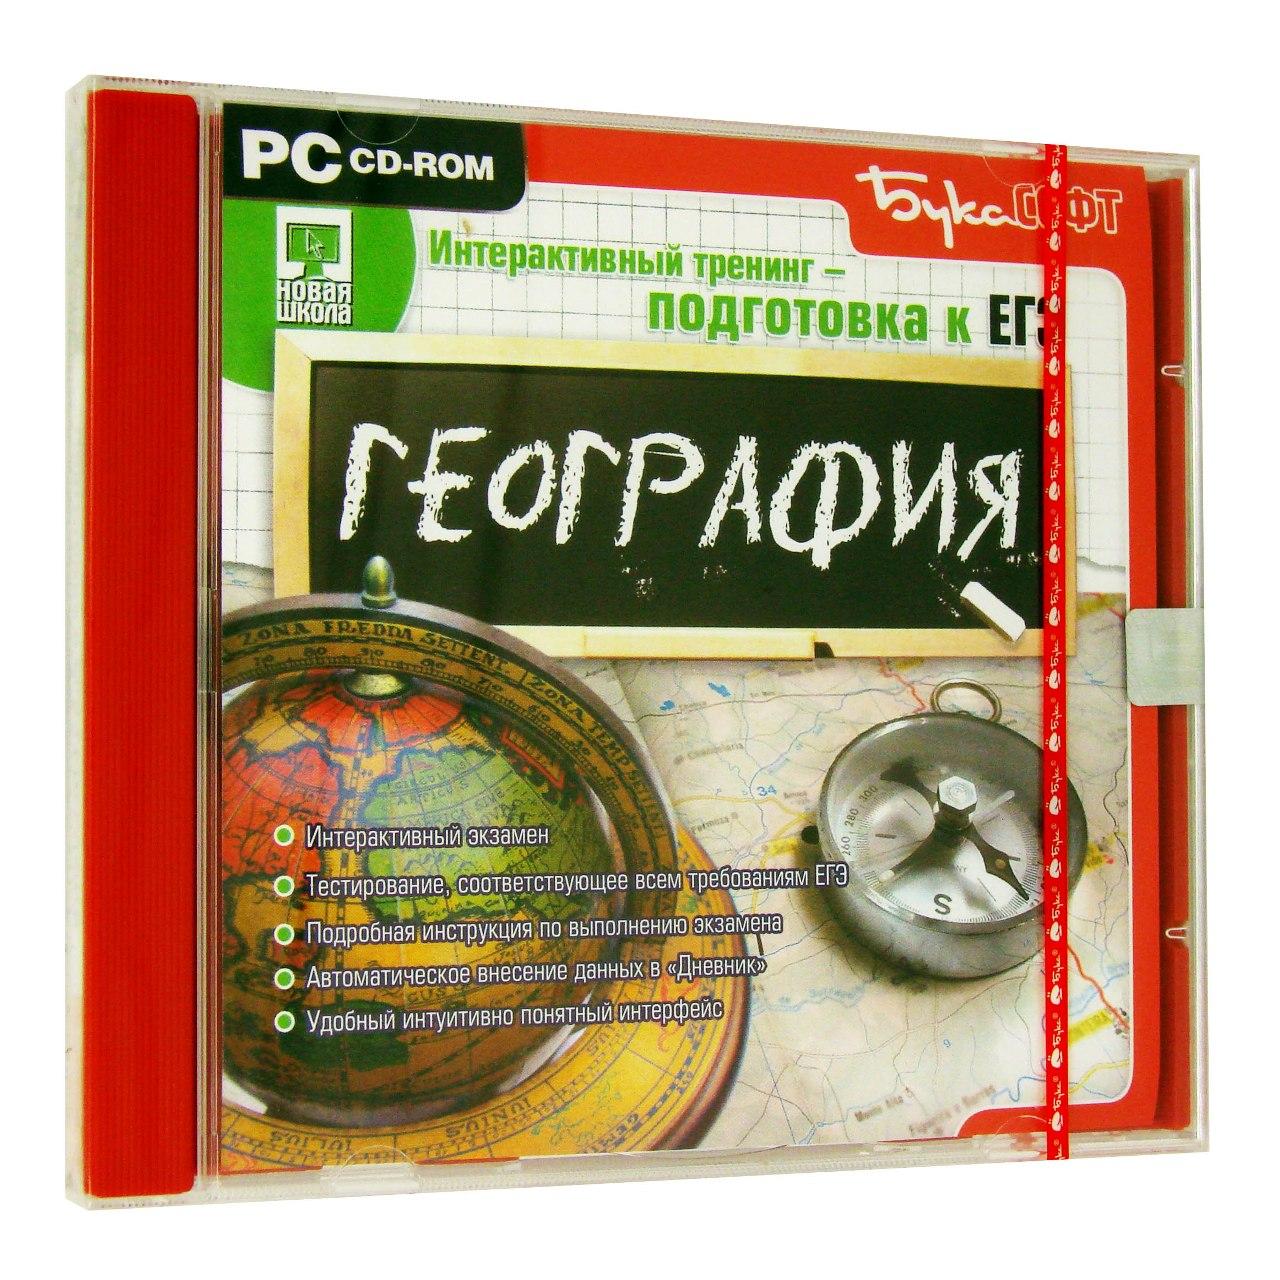 Компьютерный компакт-диск Подготовка к ЕГЭ. География (ПК), фирма "Бука",  1CD